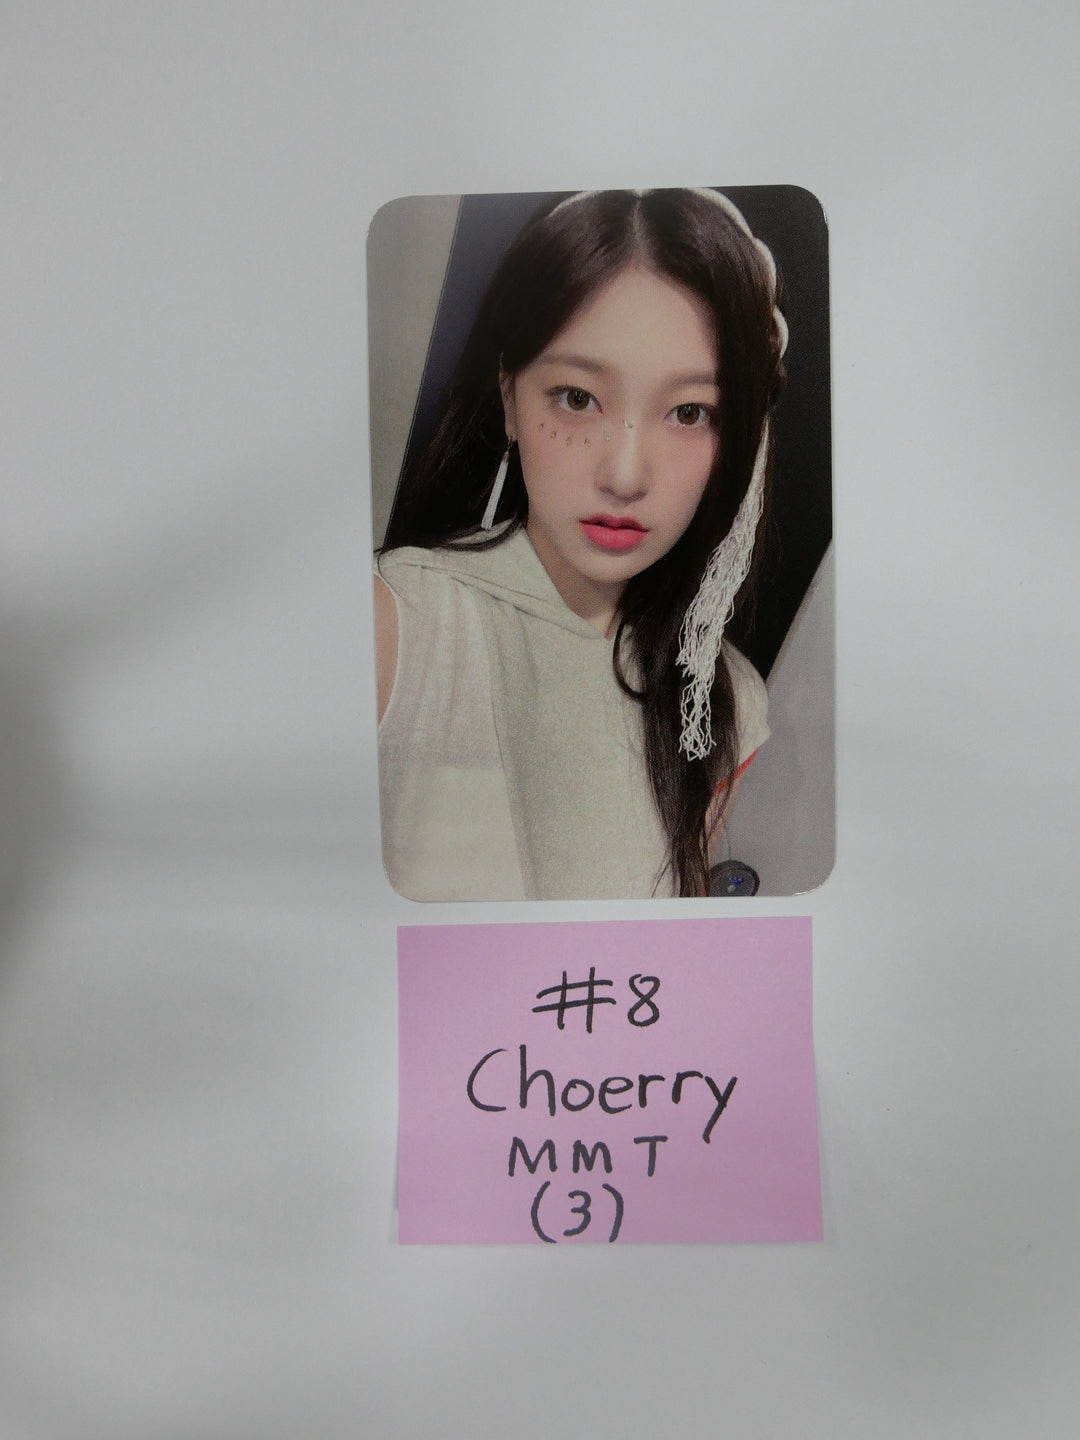 이달의 소녀 '&amp;' - MMT 팬사인회 포토카드 2차